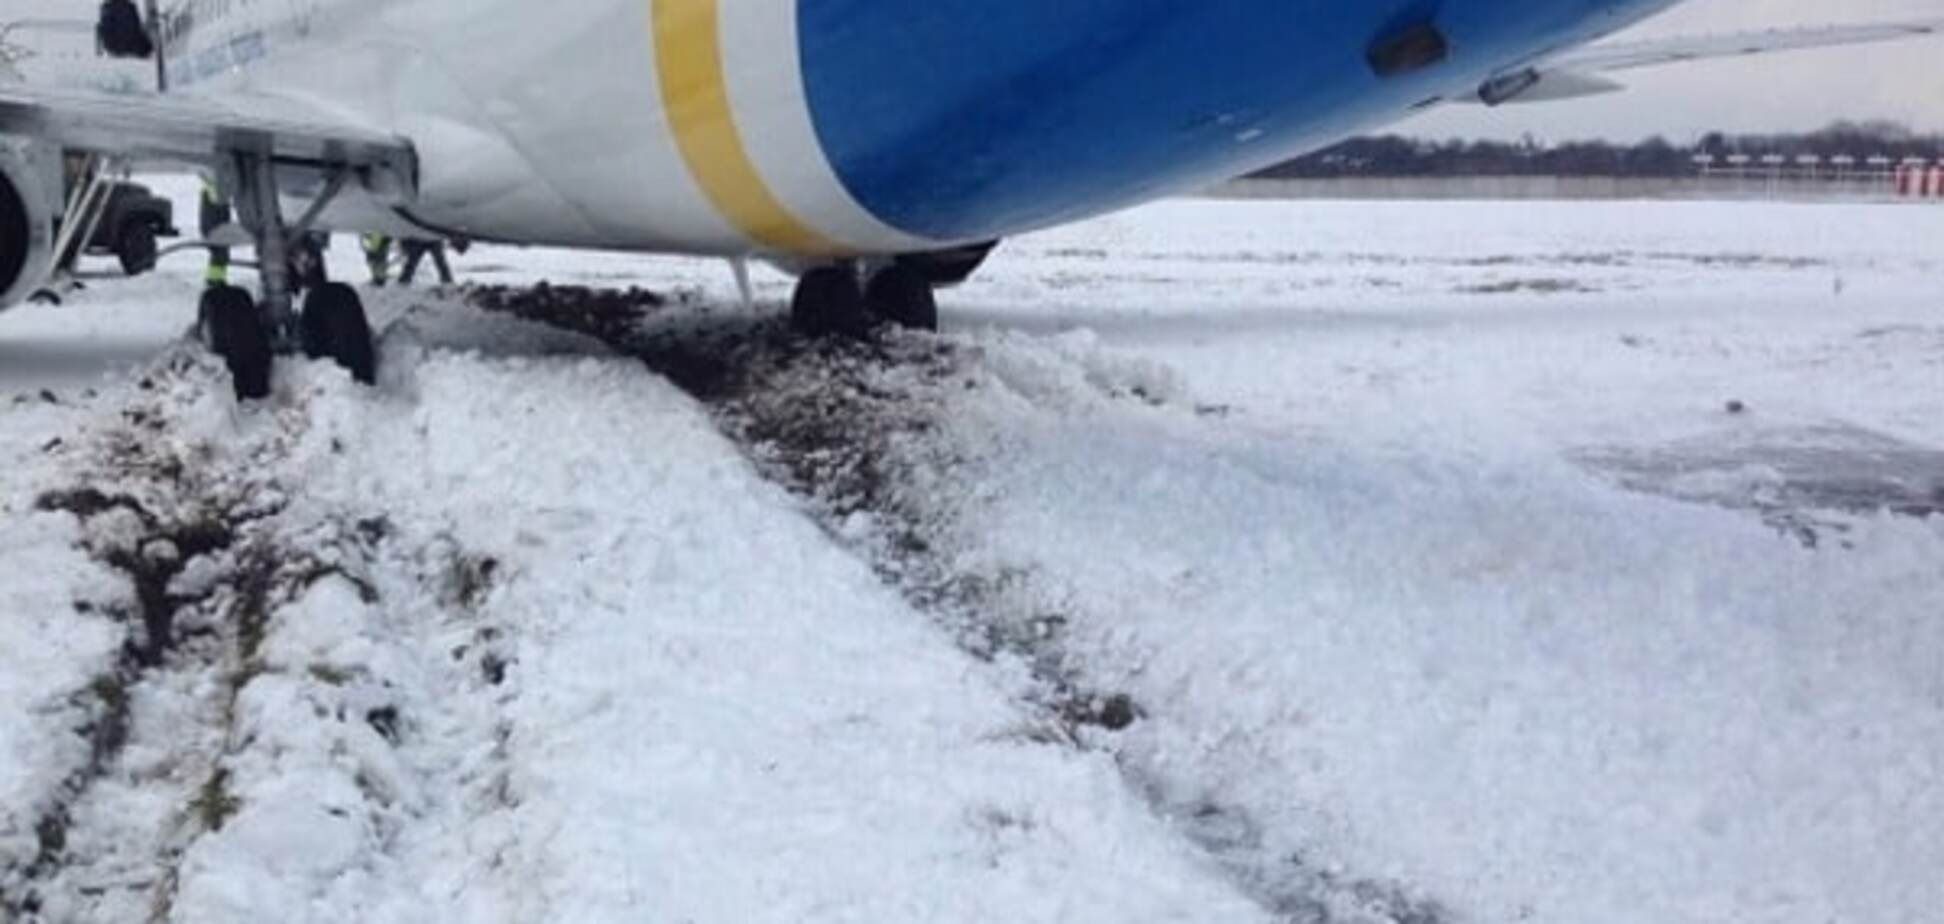 ЧП с самолетом в аэропорту 'Киев': все подробности, фото, видео